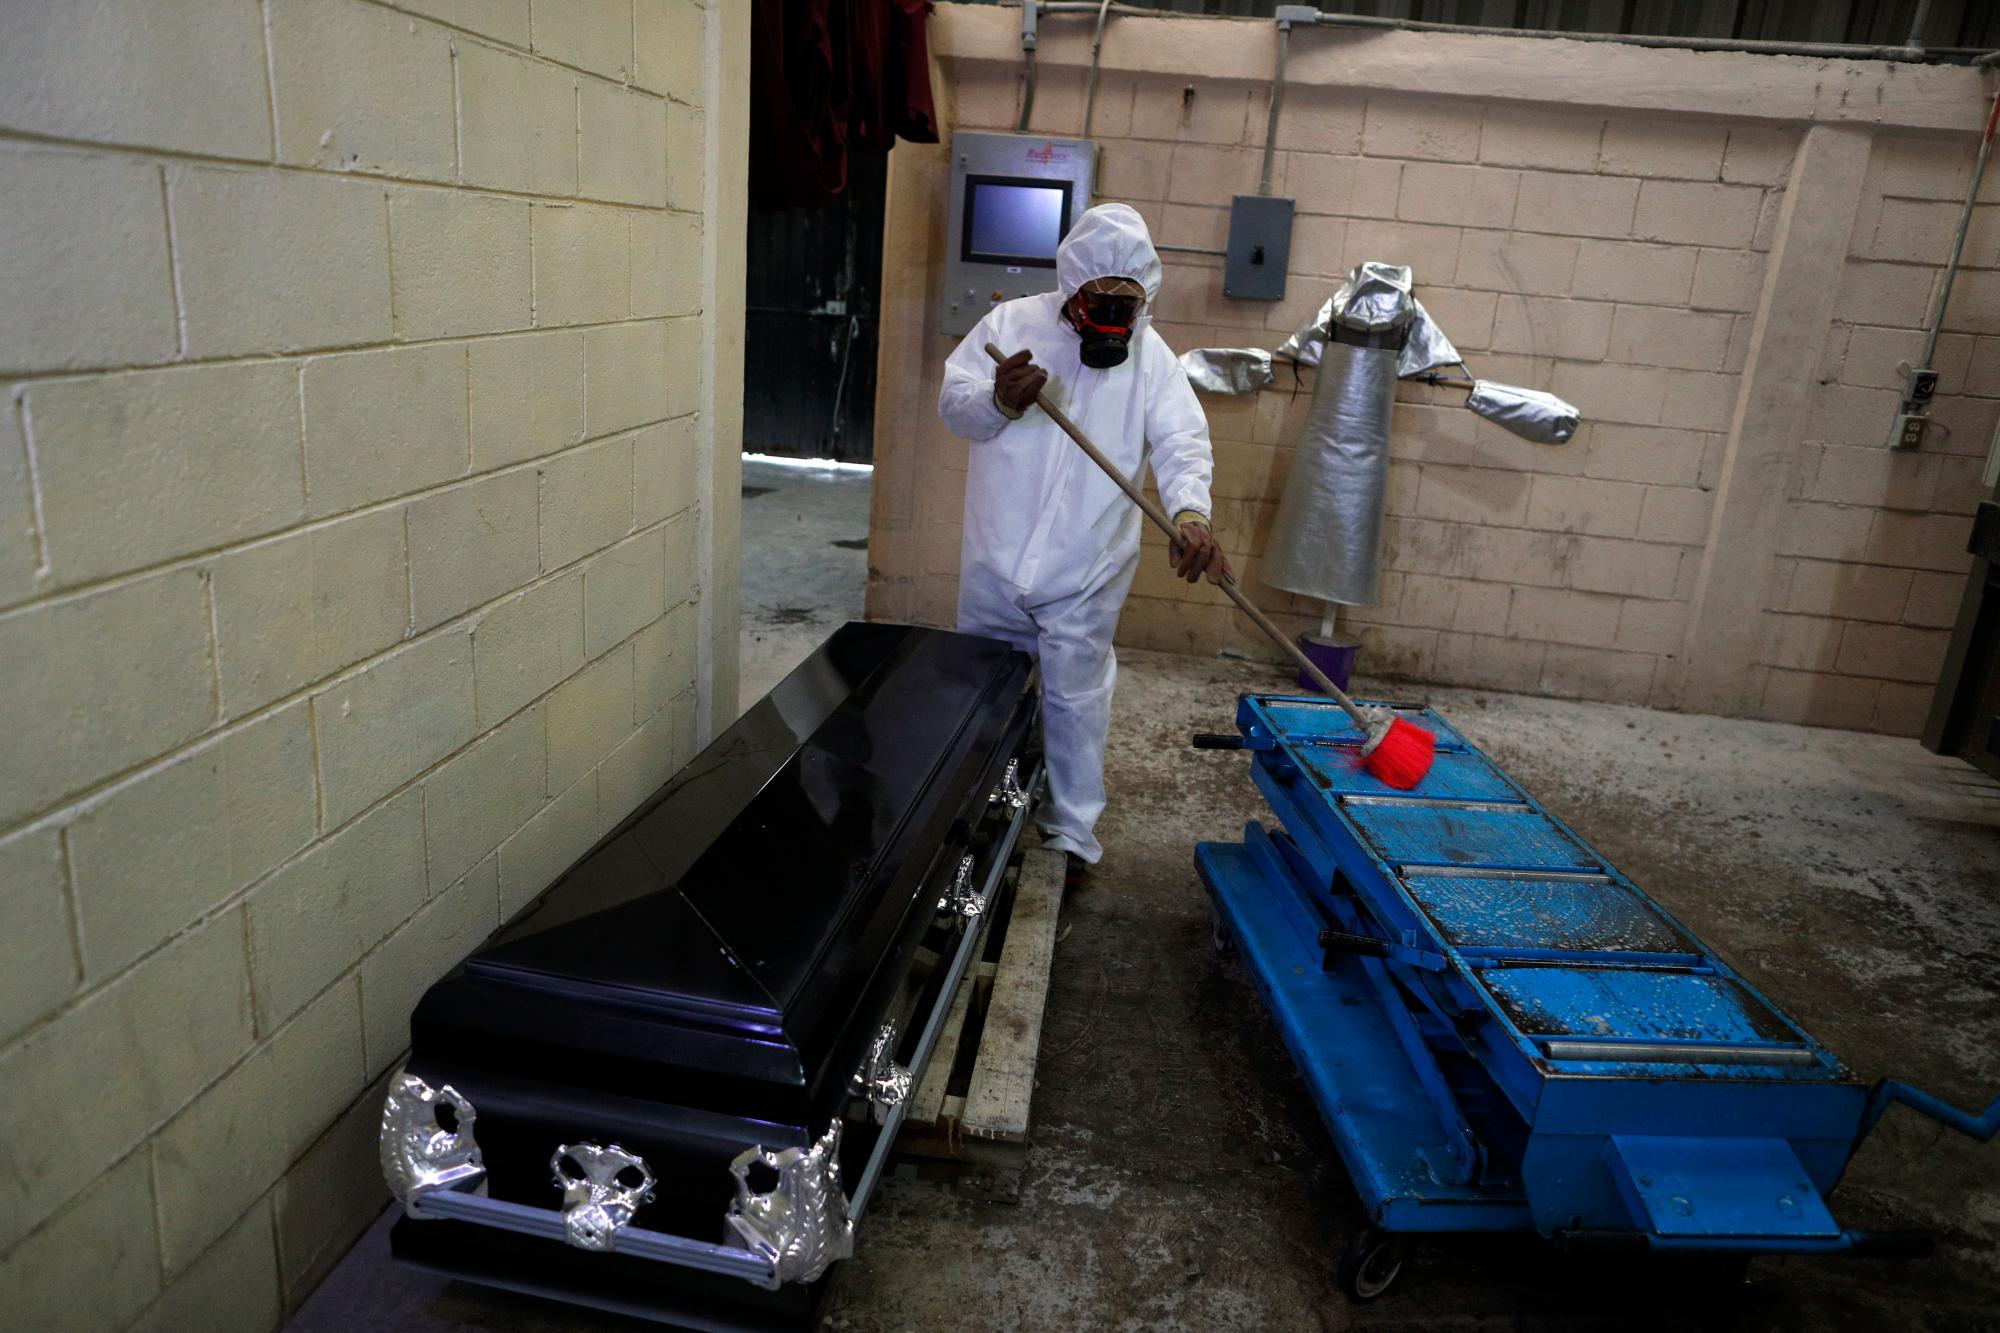 Un trabajador limpia una camilla con desinfectante después de que el cuerpo de una persona que murió de coronavirus fue colocado en el horno para cremación, en los mausoleos de San Cristóbal en Ecatepec, Estado de México, parte del área metropolitana de la Ciudad de México, el jueves 21 de mayo de 2020. Cuando se manejan casos de COVID-19 confirmado o sospechoso, los trabajadores de crematorios usan trajes protectores, respiradores de cara completa y guantes, y mantienen protocolos rígidos de desinfección. (Foto AP / Rebecca Blackwell)